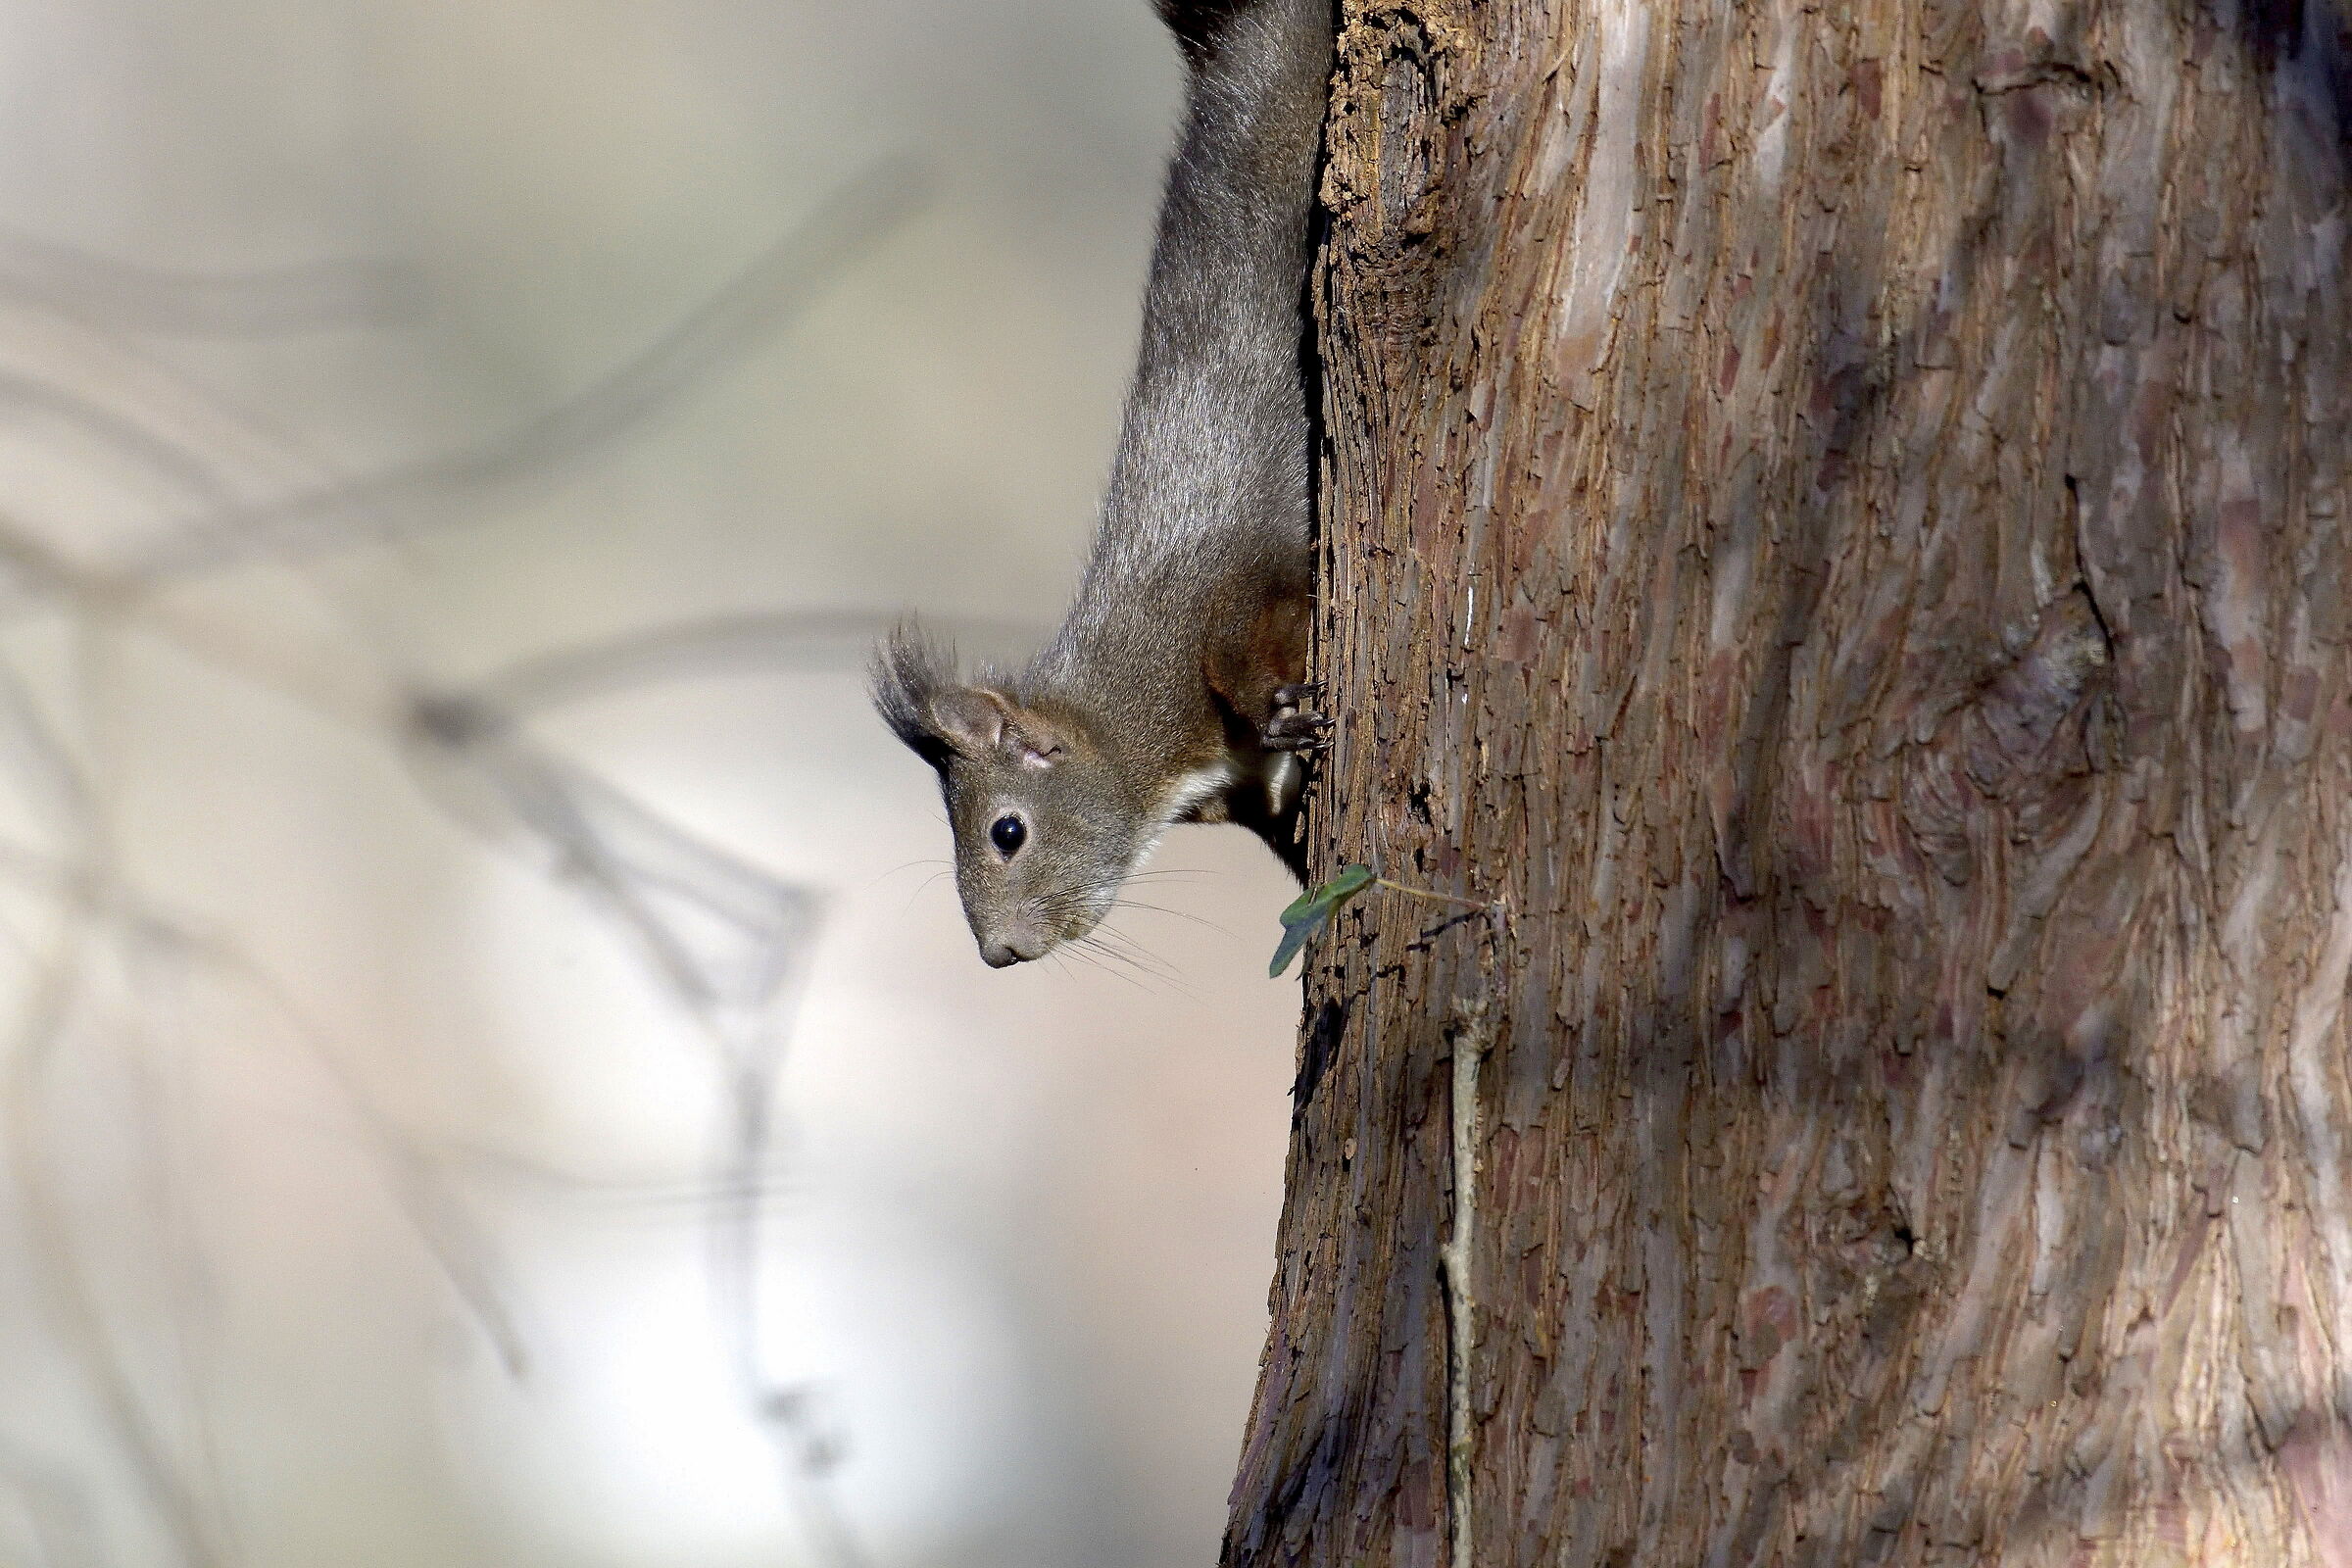 Squirrel in search of nourishment...